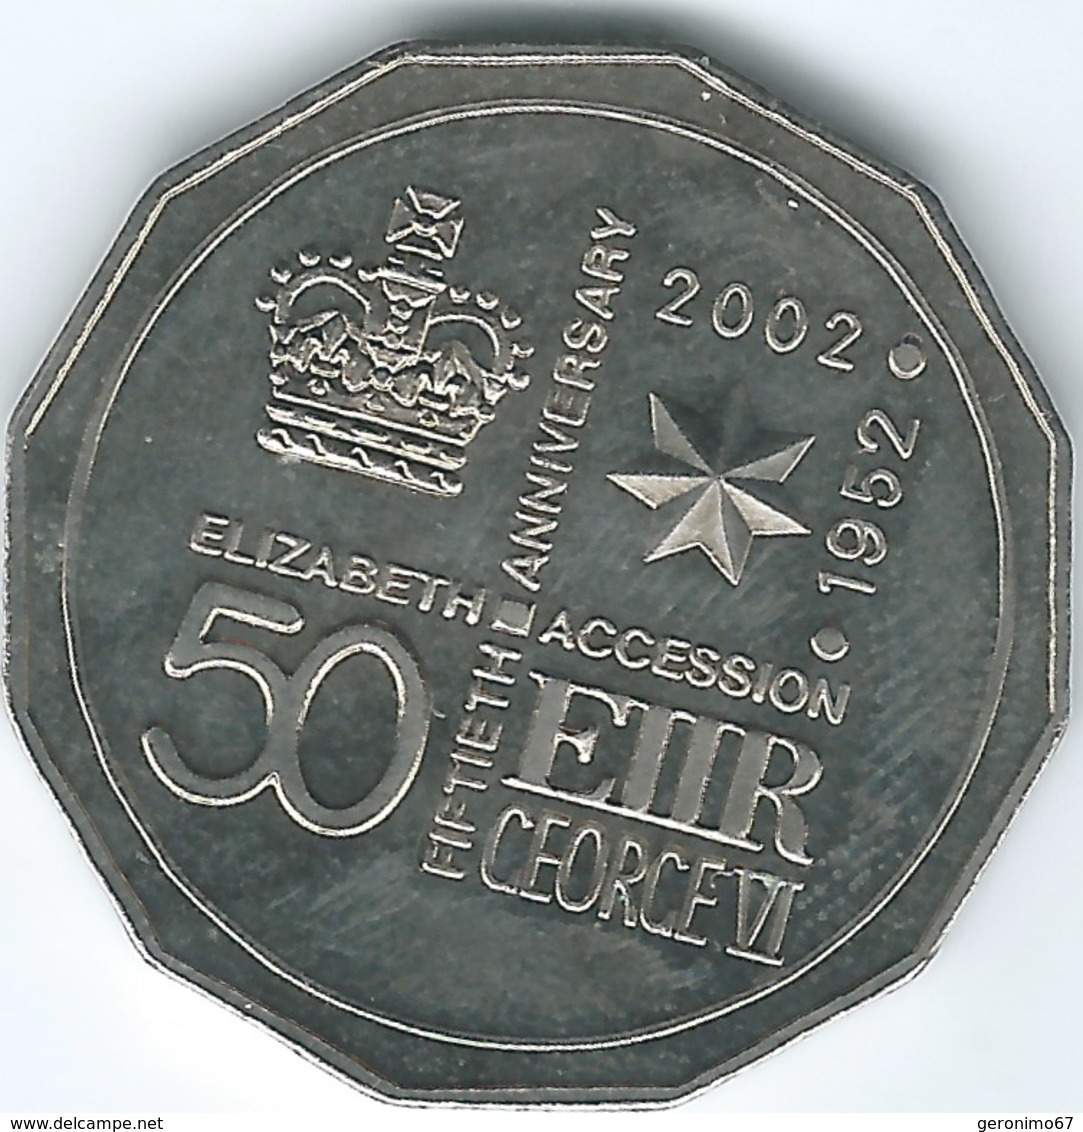 Australia - 2002 - Elizabeth II Golden Jubilee - KM645 - 50 Cents